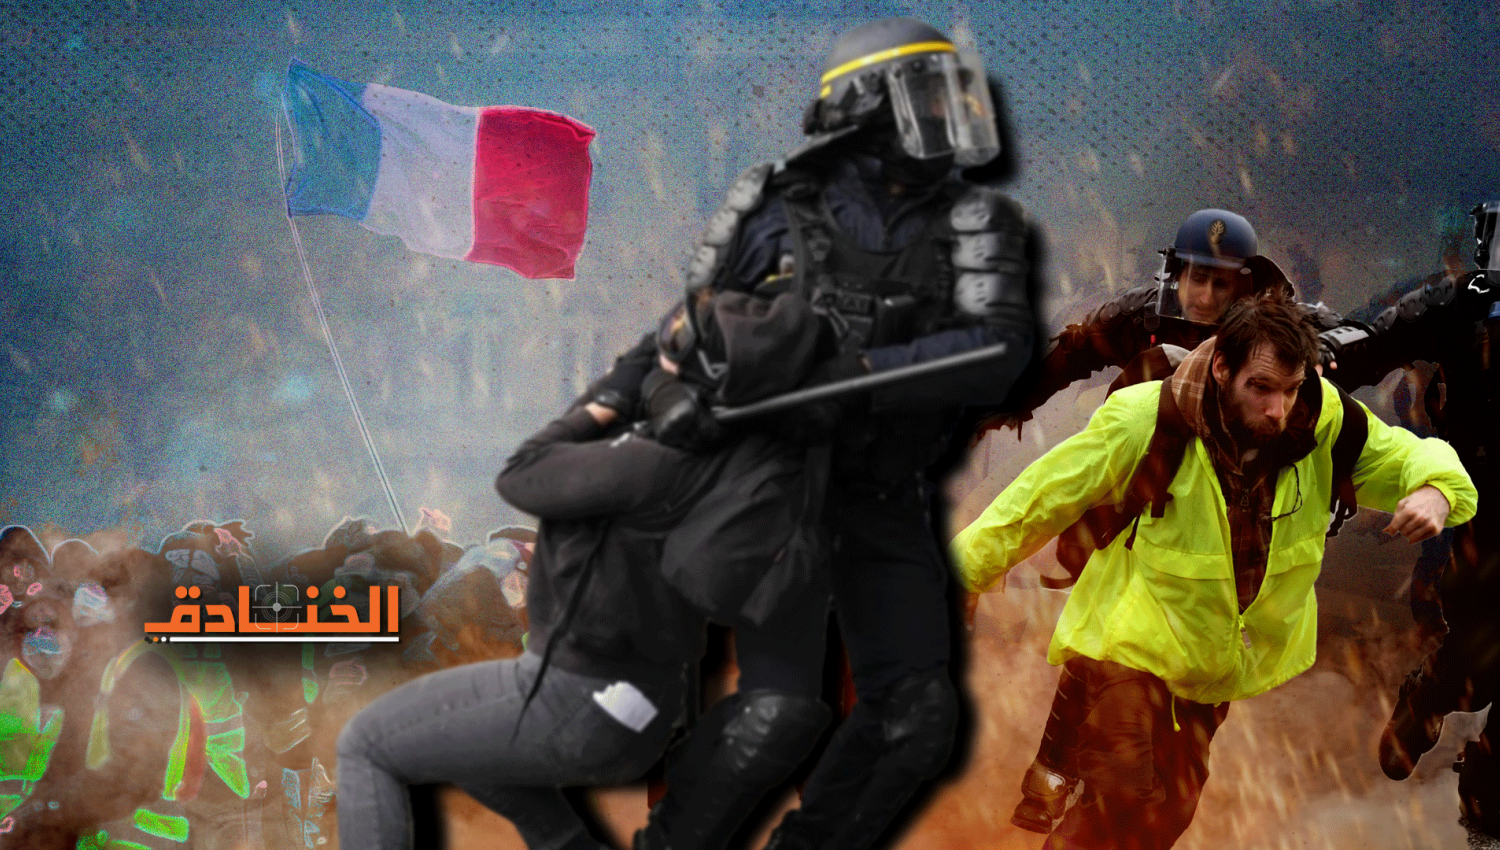 الاحتجاجات في فرنسا: انتقادات باستخدام العنف 